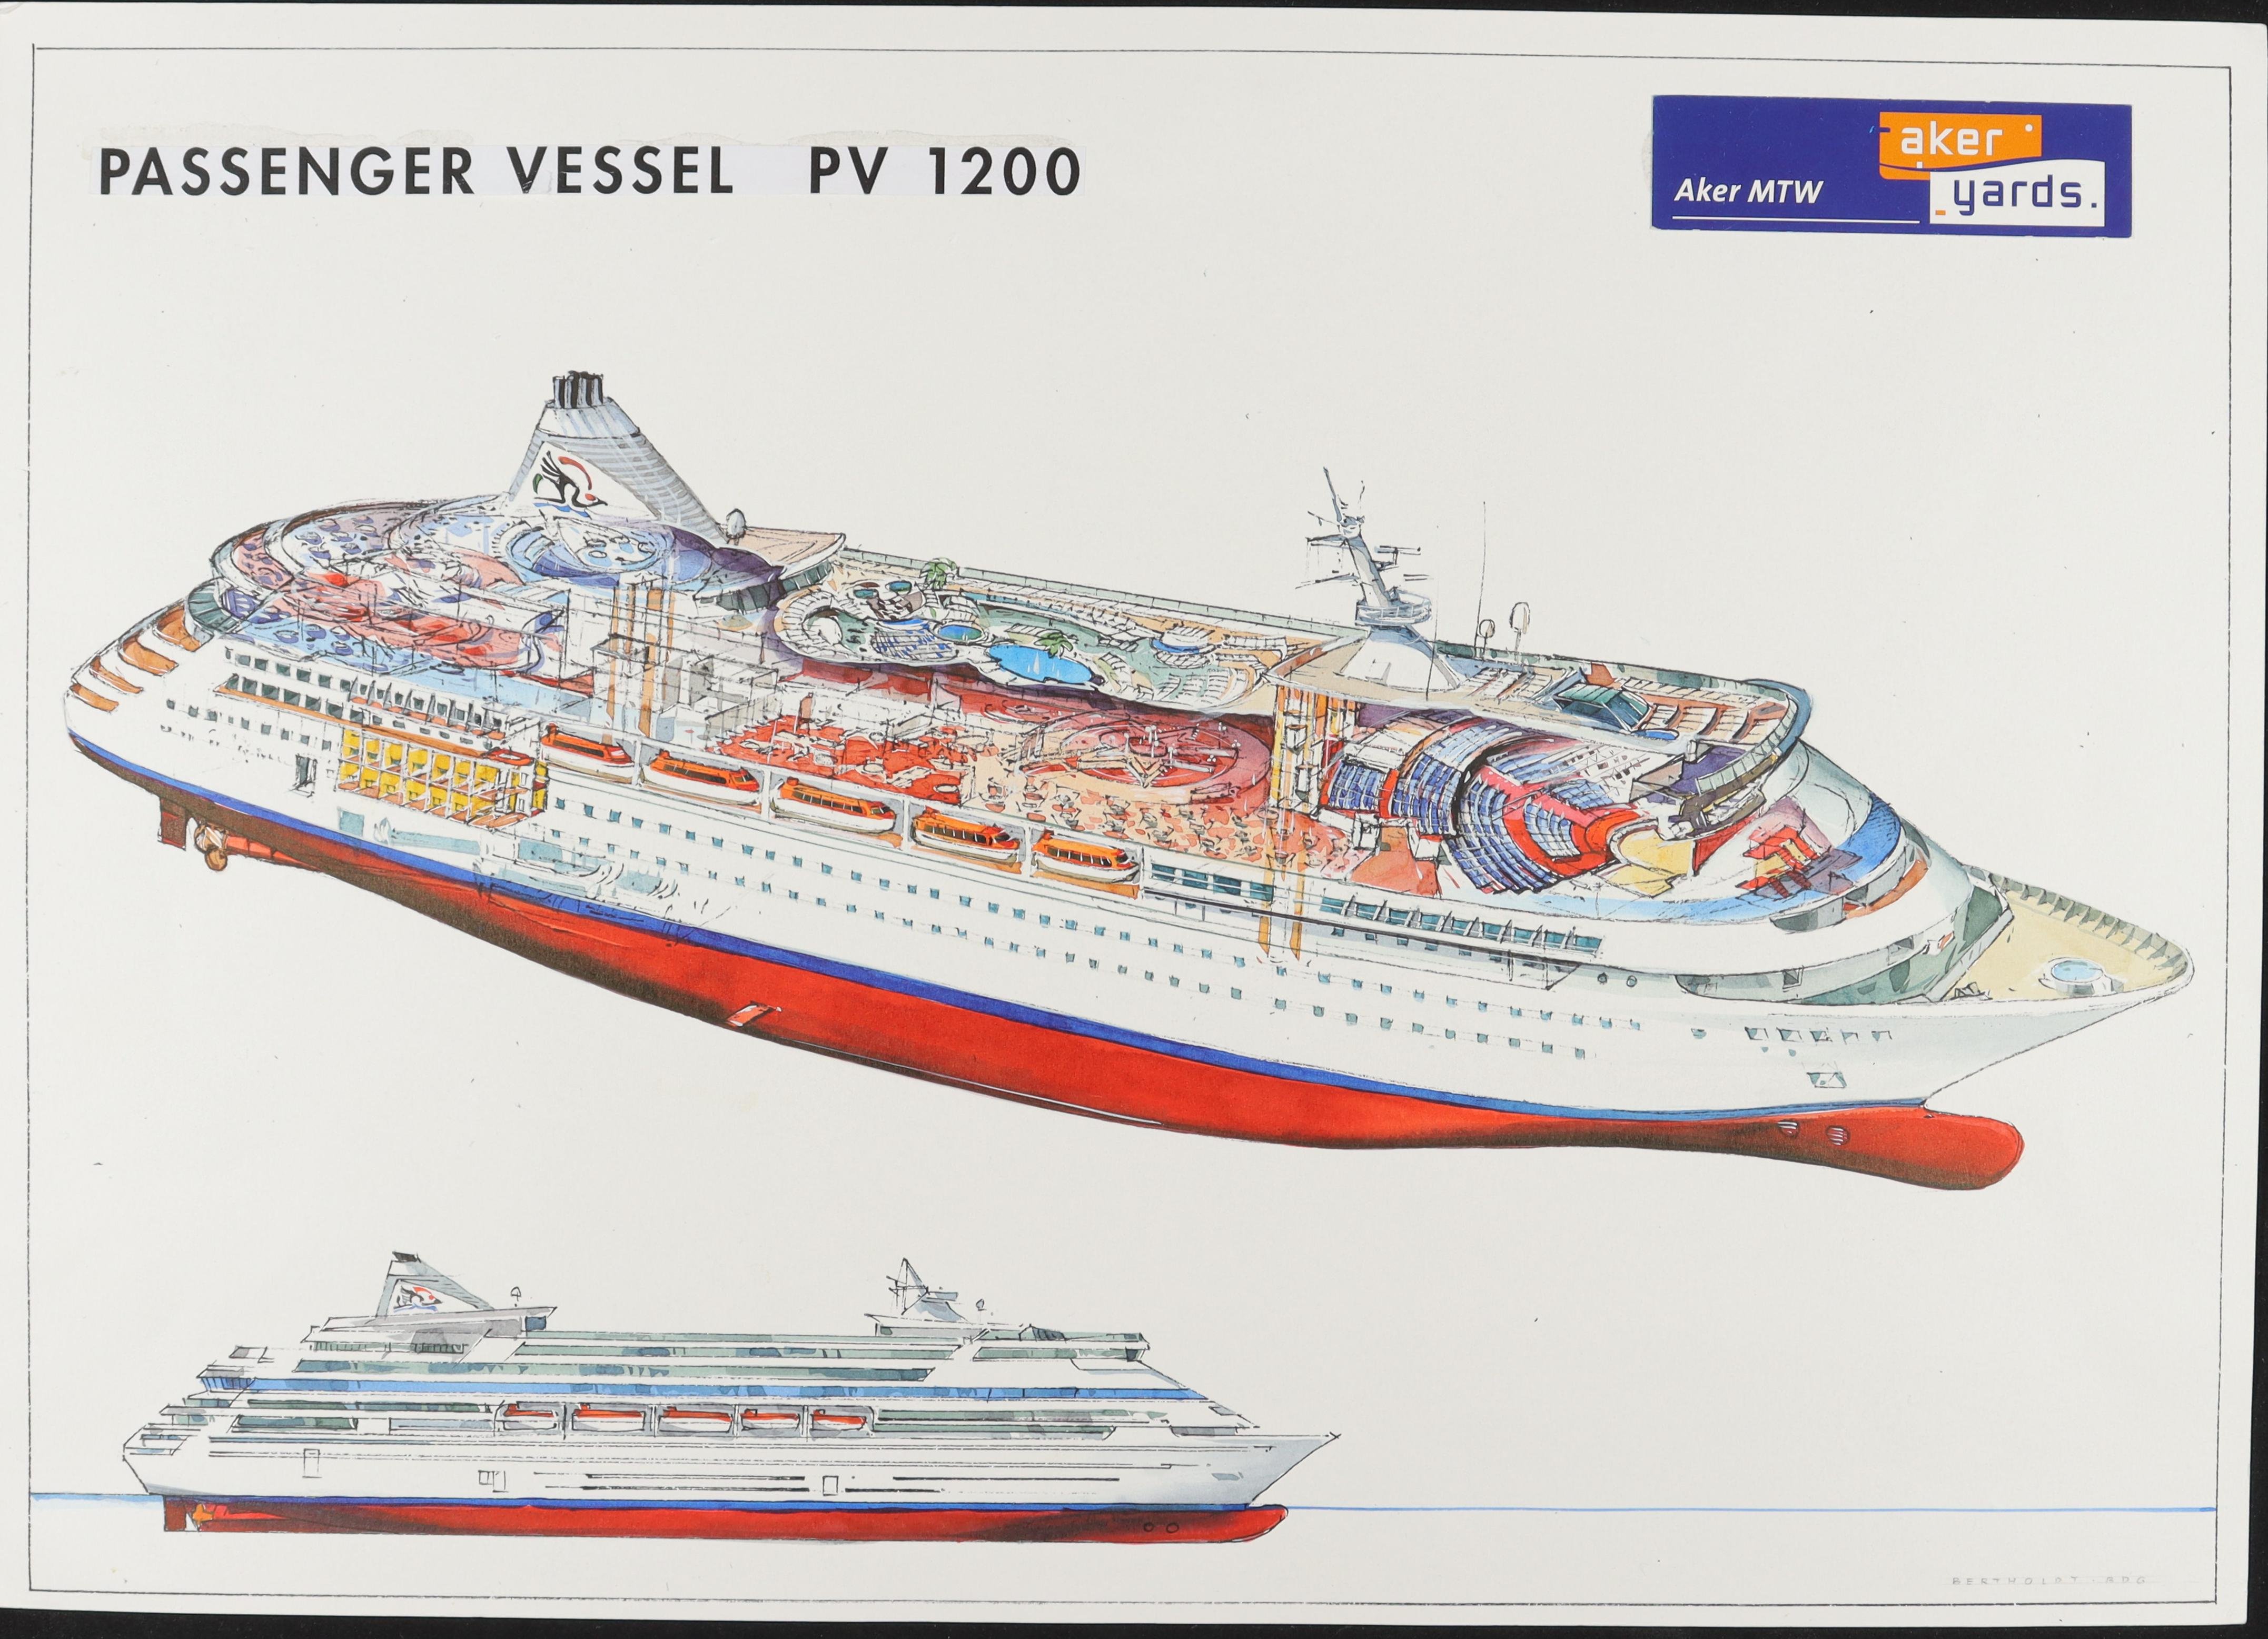 AIDA Passengervessel PV 1200 (AIDA Passengervessel PV 1200) (Schiffbau- und Schiffahrtsmuseum Rostock RR-F)